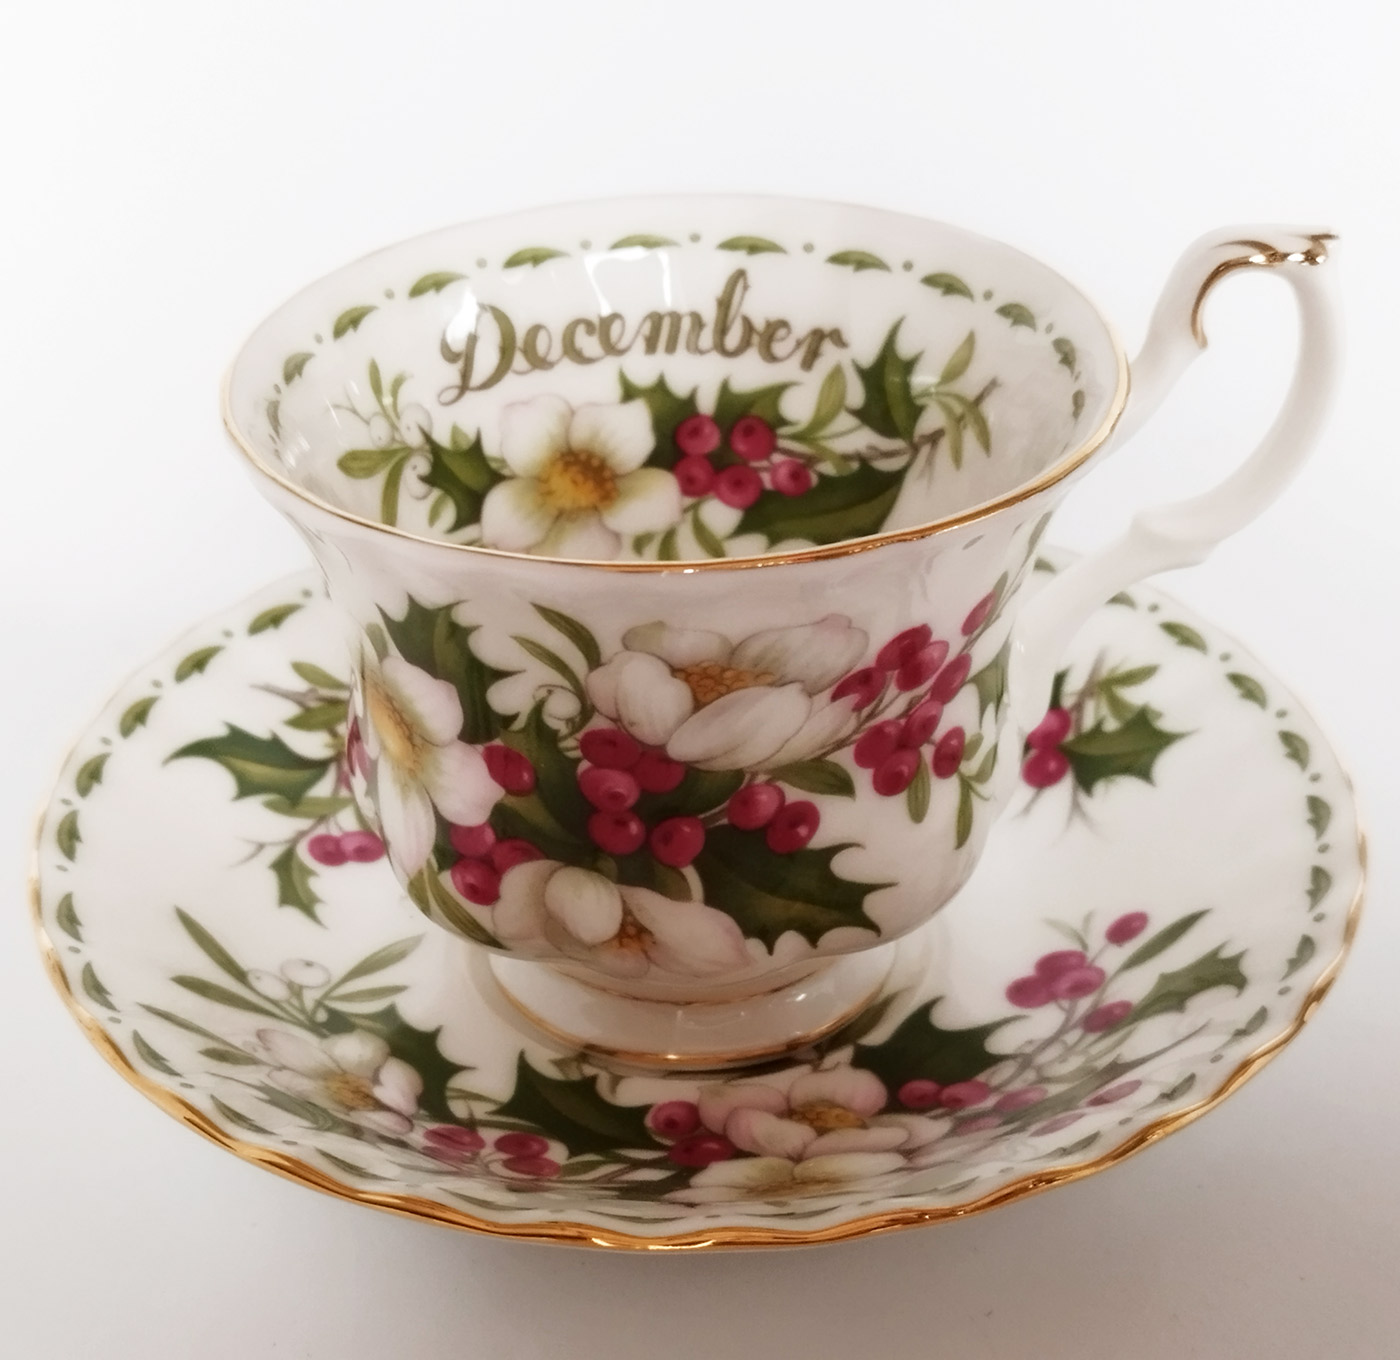 Tazza da tè con piattino Royal Albert collezione Flower of the month mese  di dicembre/december